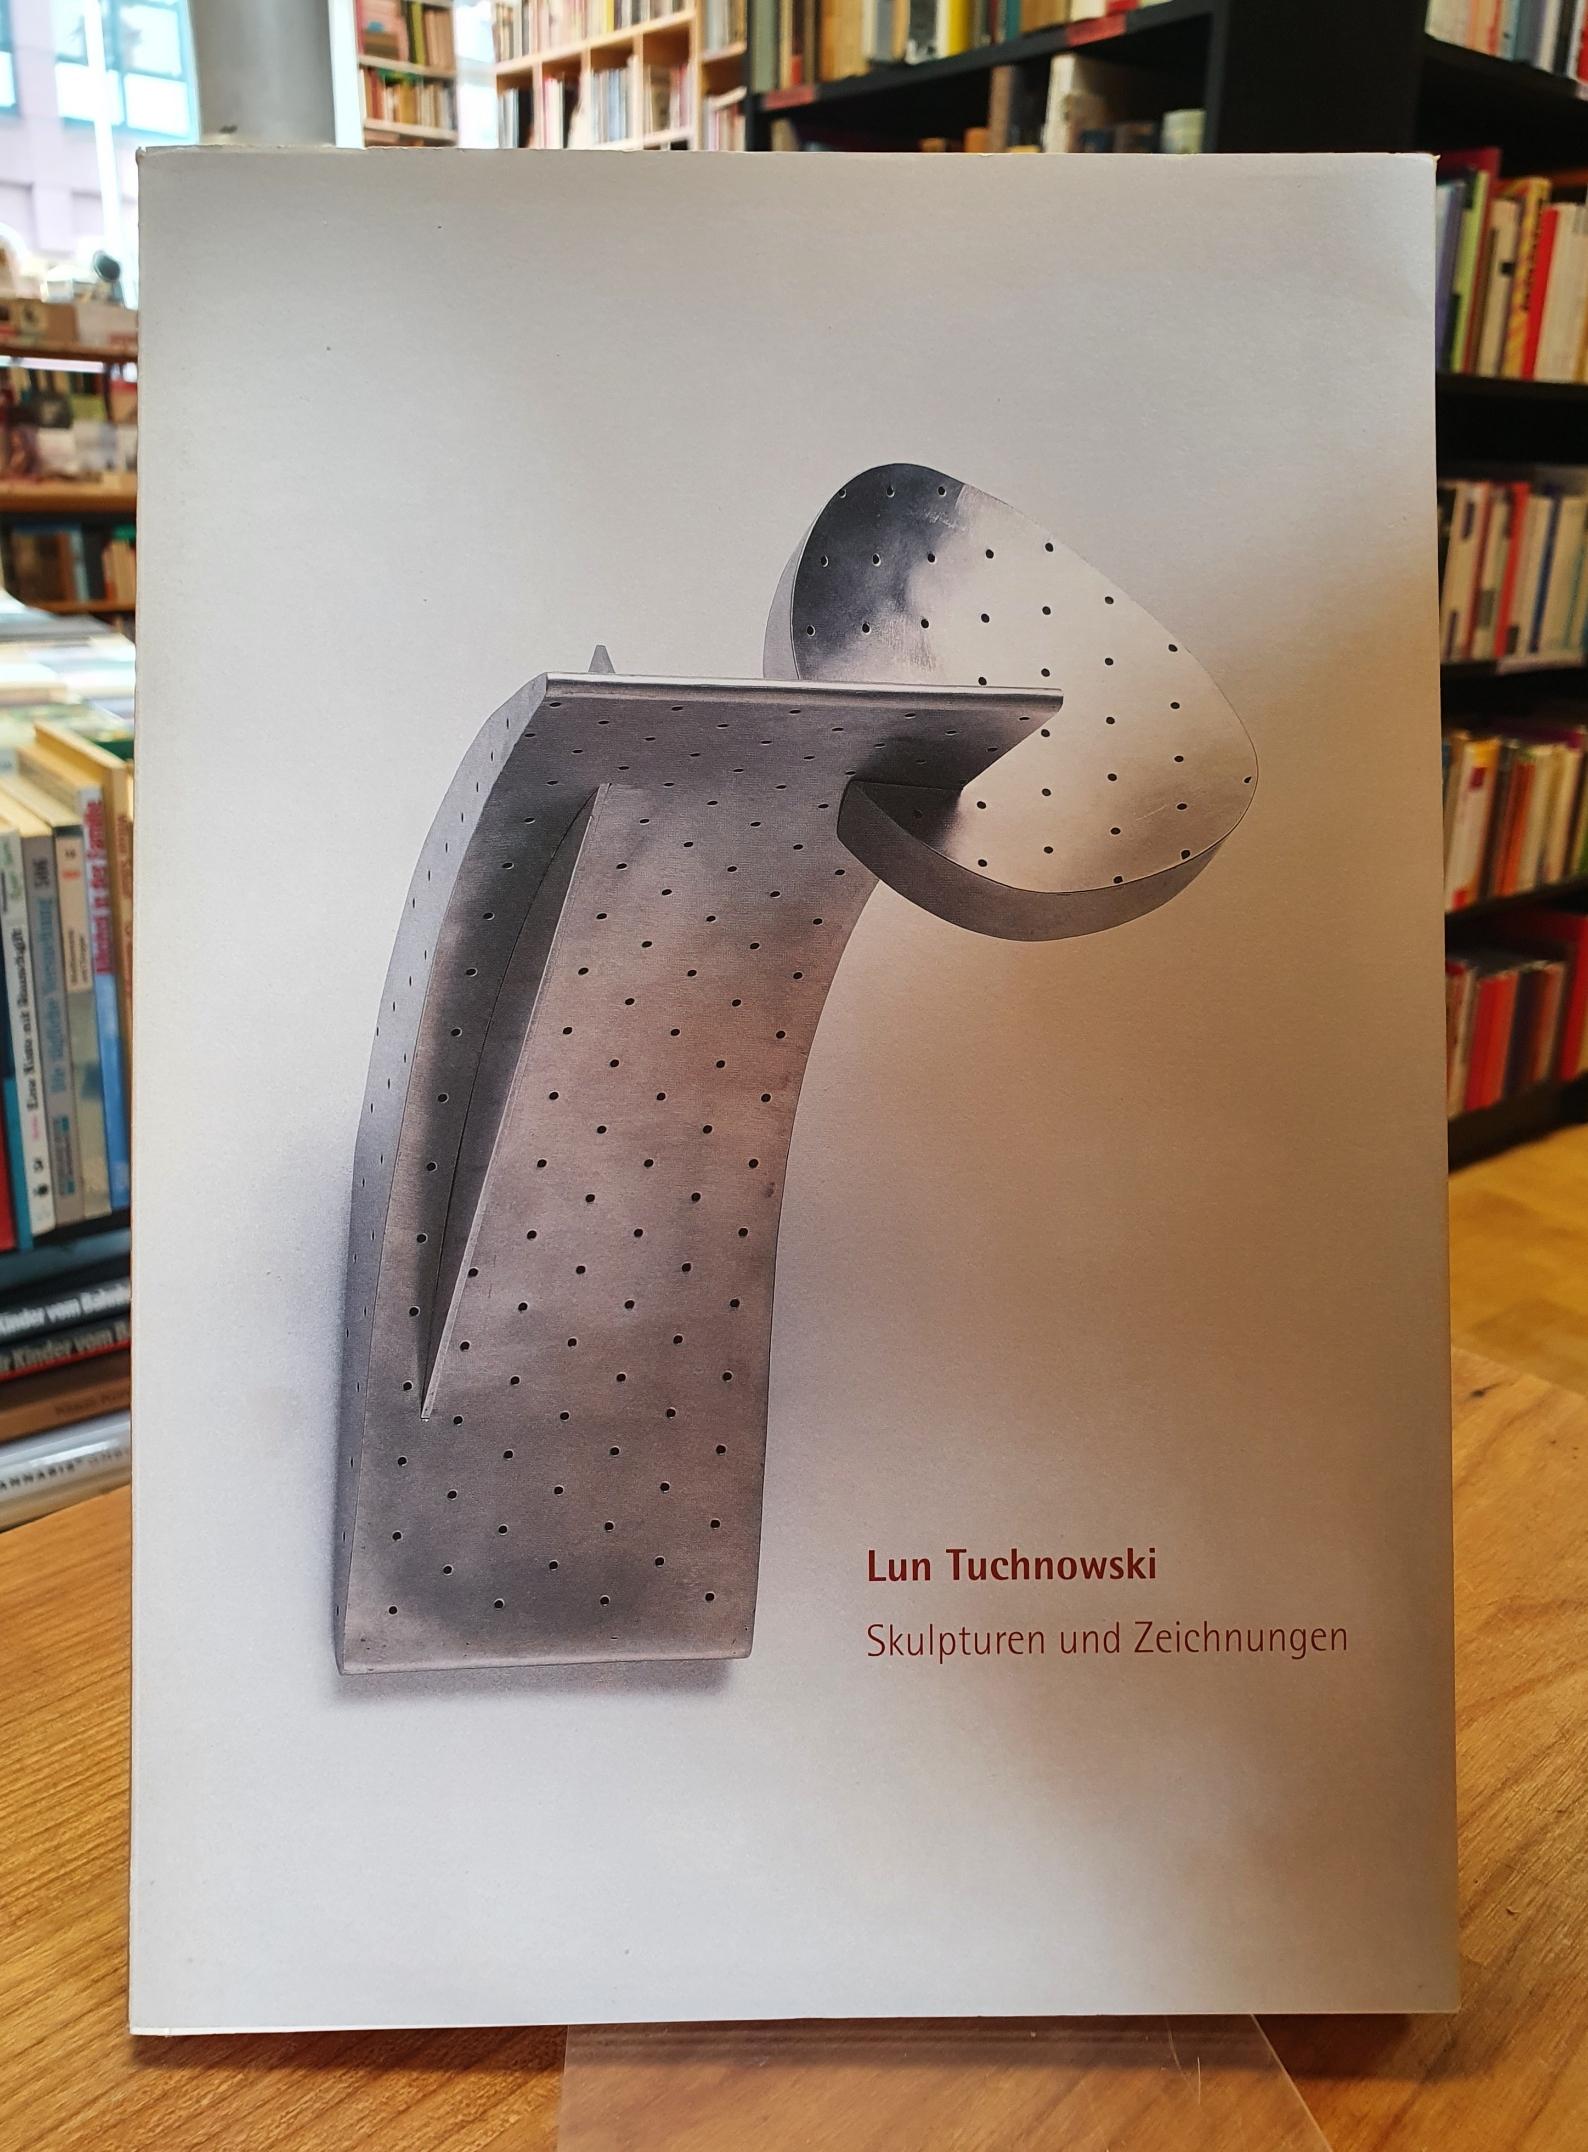 Tuchnowki, Lun Tuchnowski – Skulpturen und Zeichnungen,